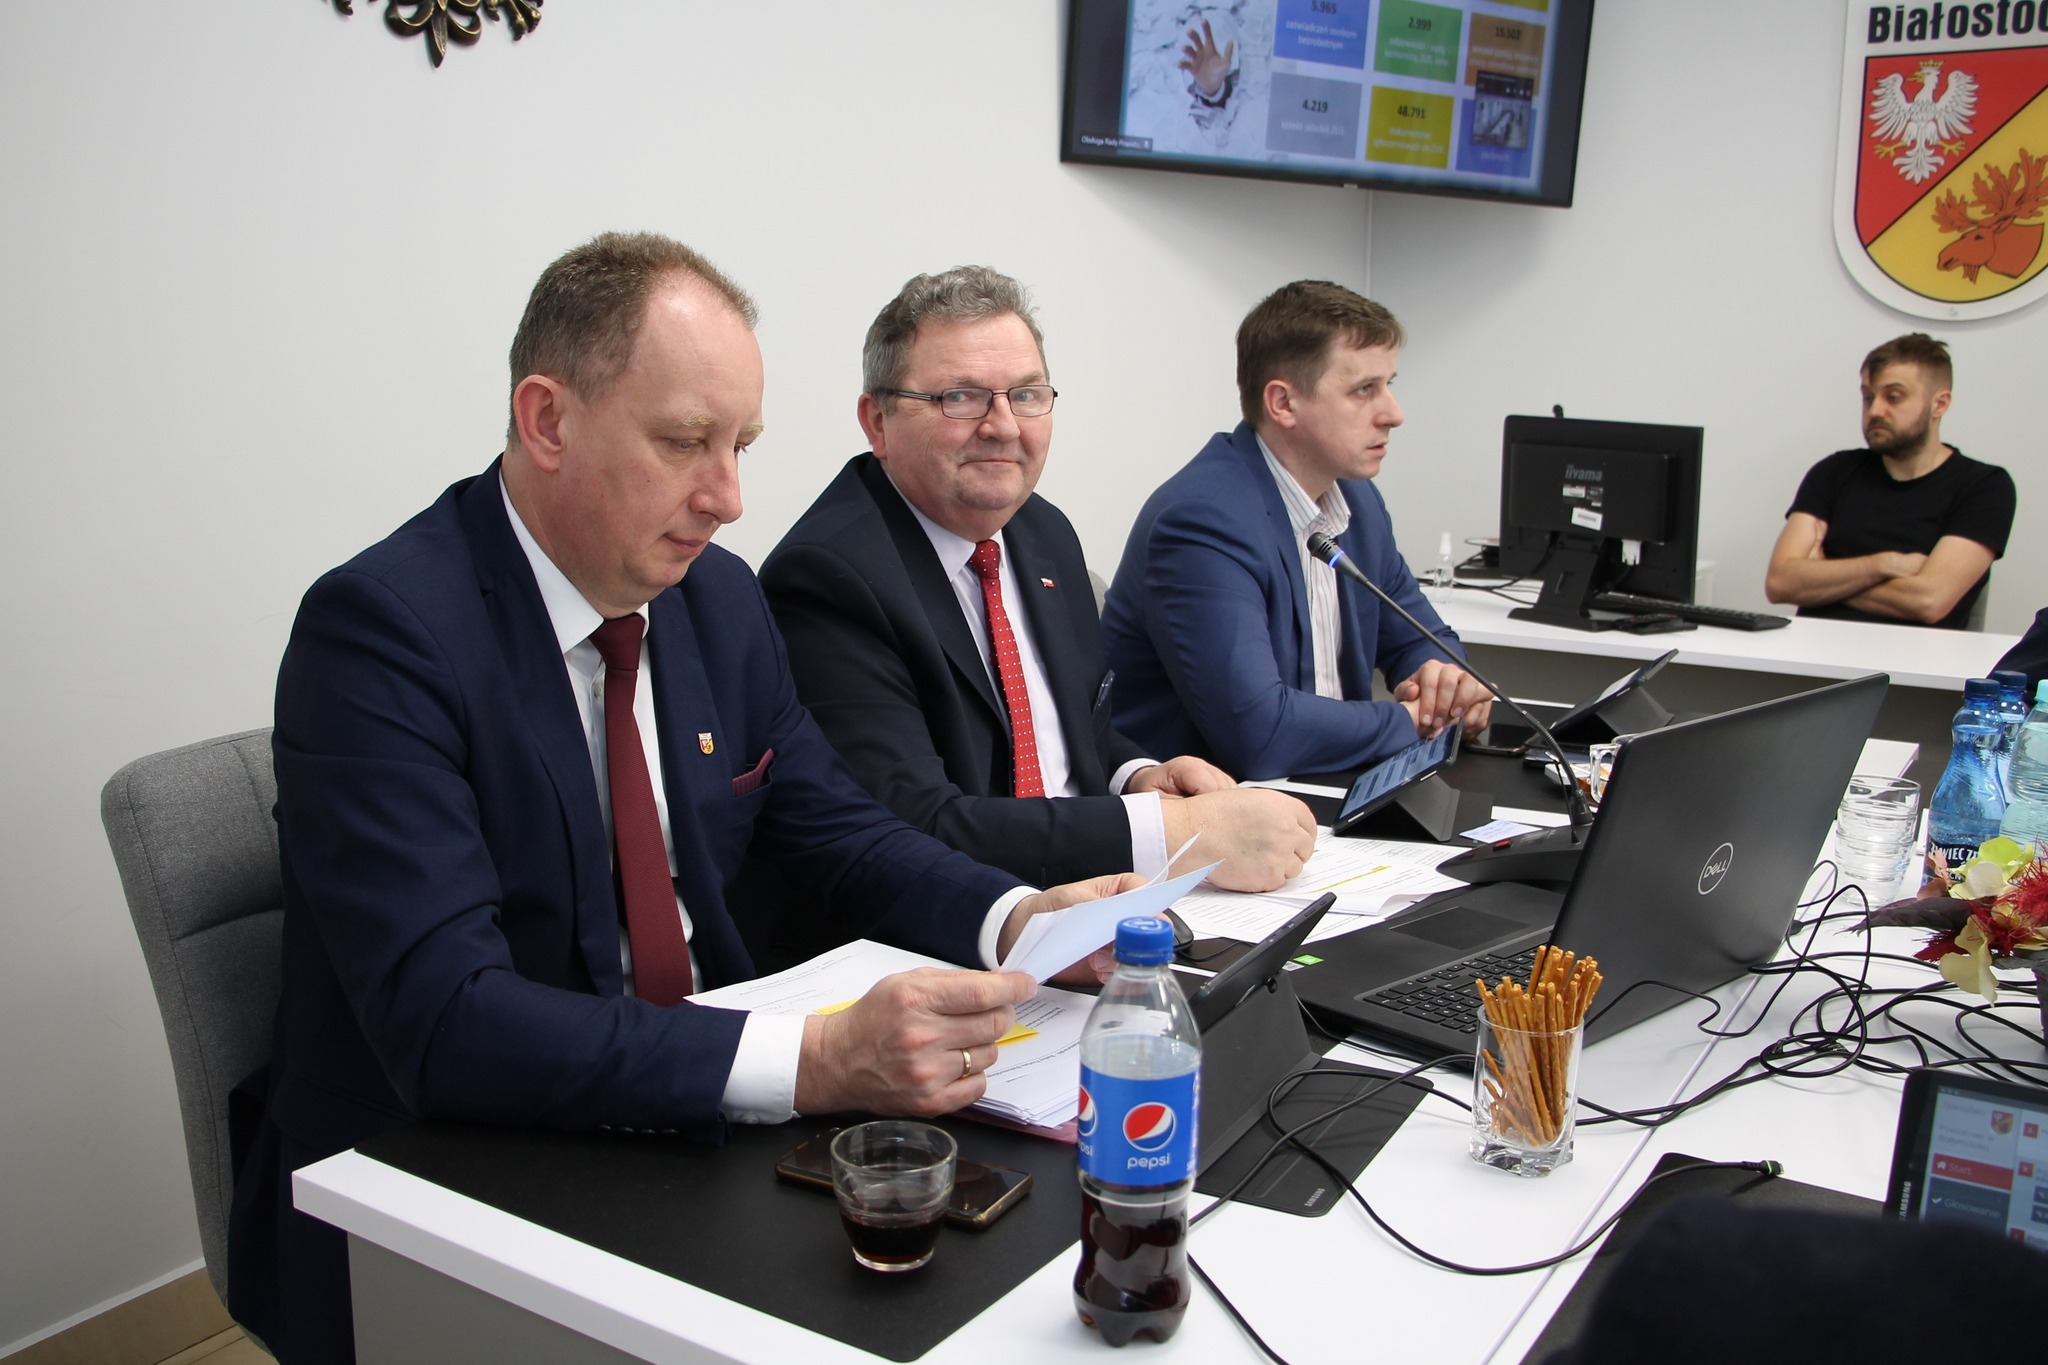 Sesja Rady Powiatu Białostockiego - przewodniczący i dwaj wiceprzewodniczący
